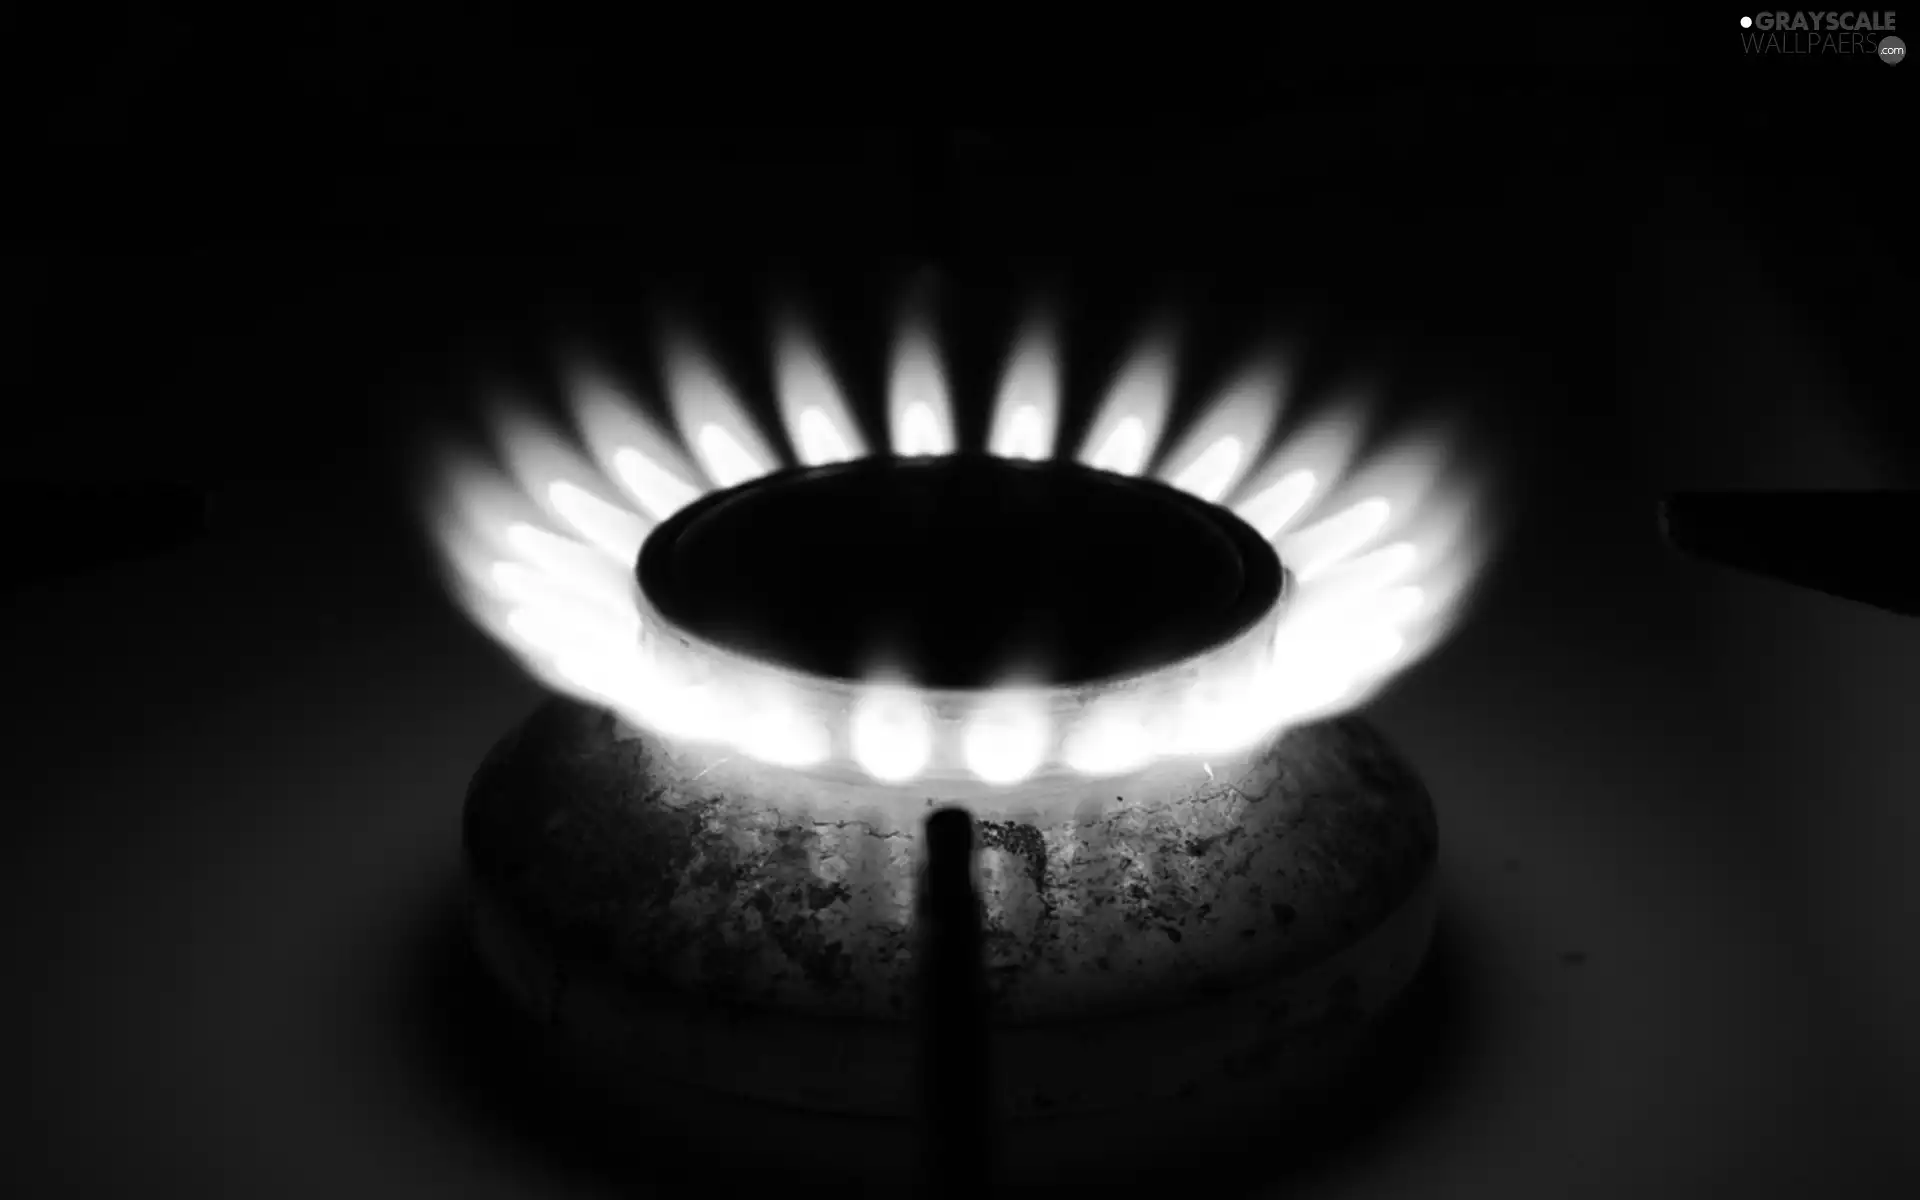 burner, gas